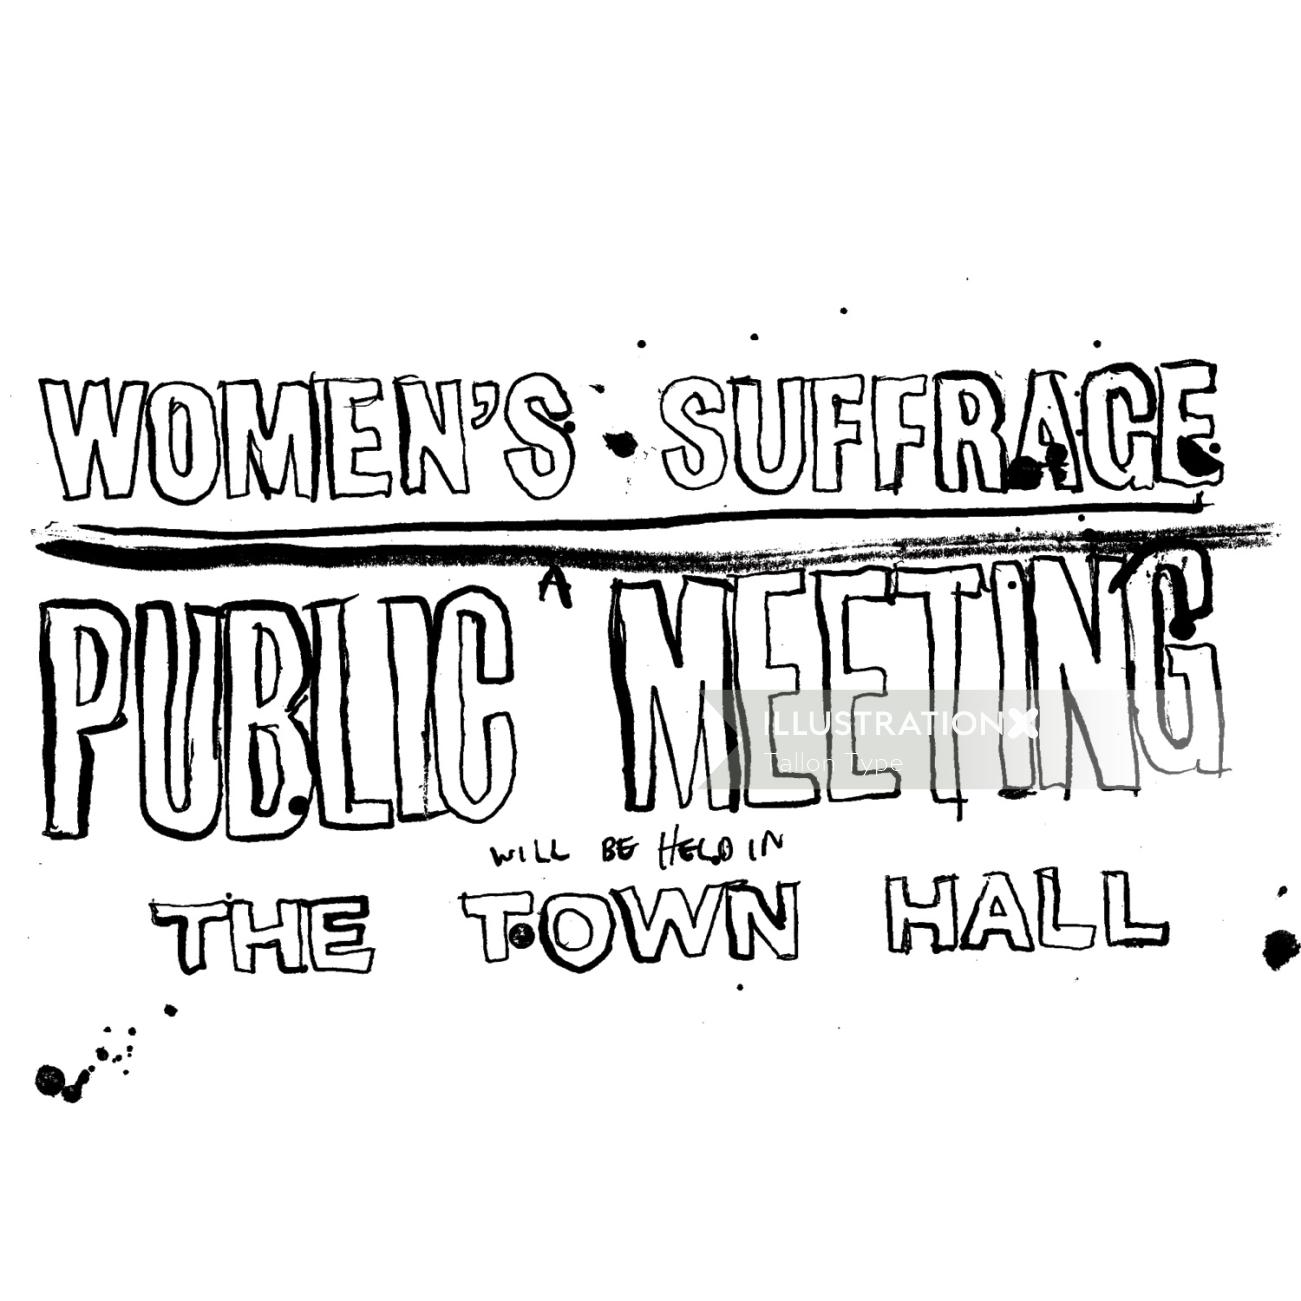 Lettrage réunion publique de surface des femmes